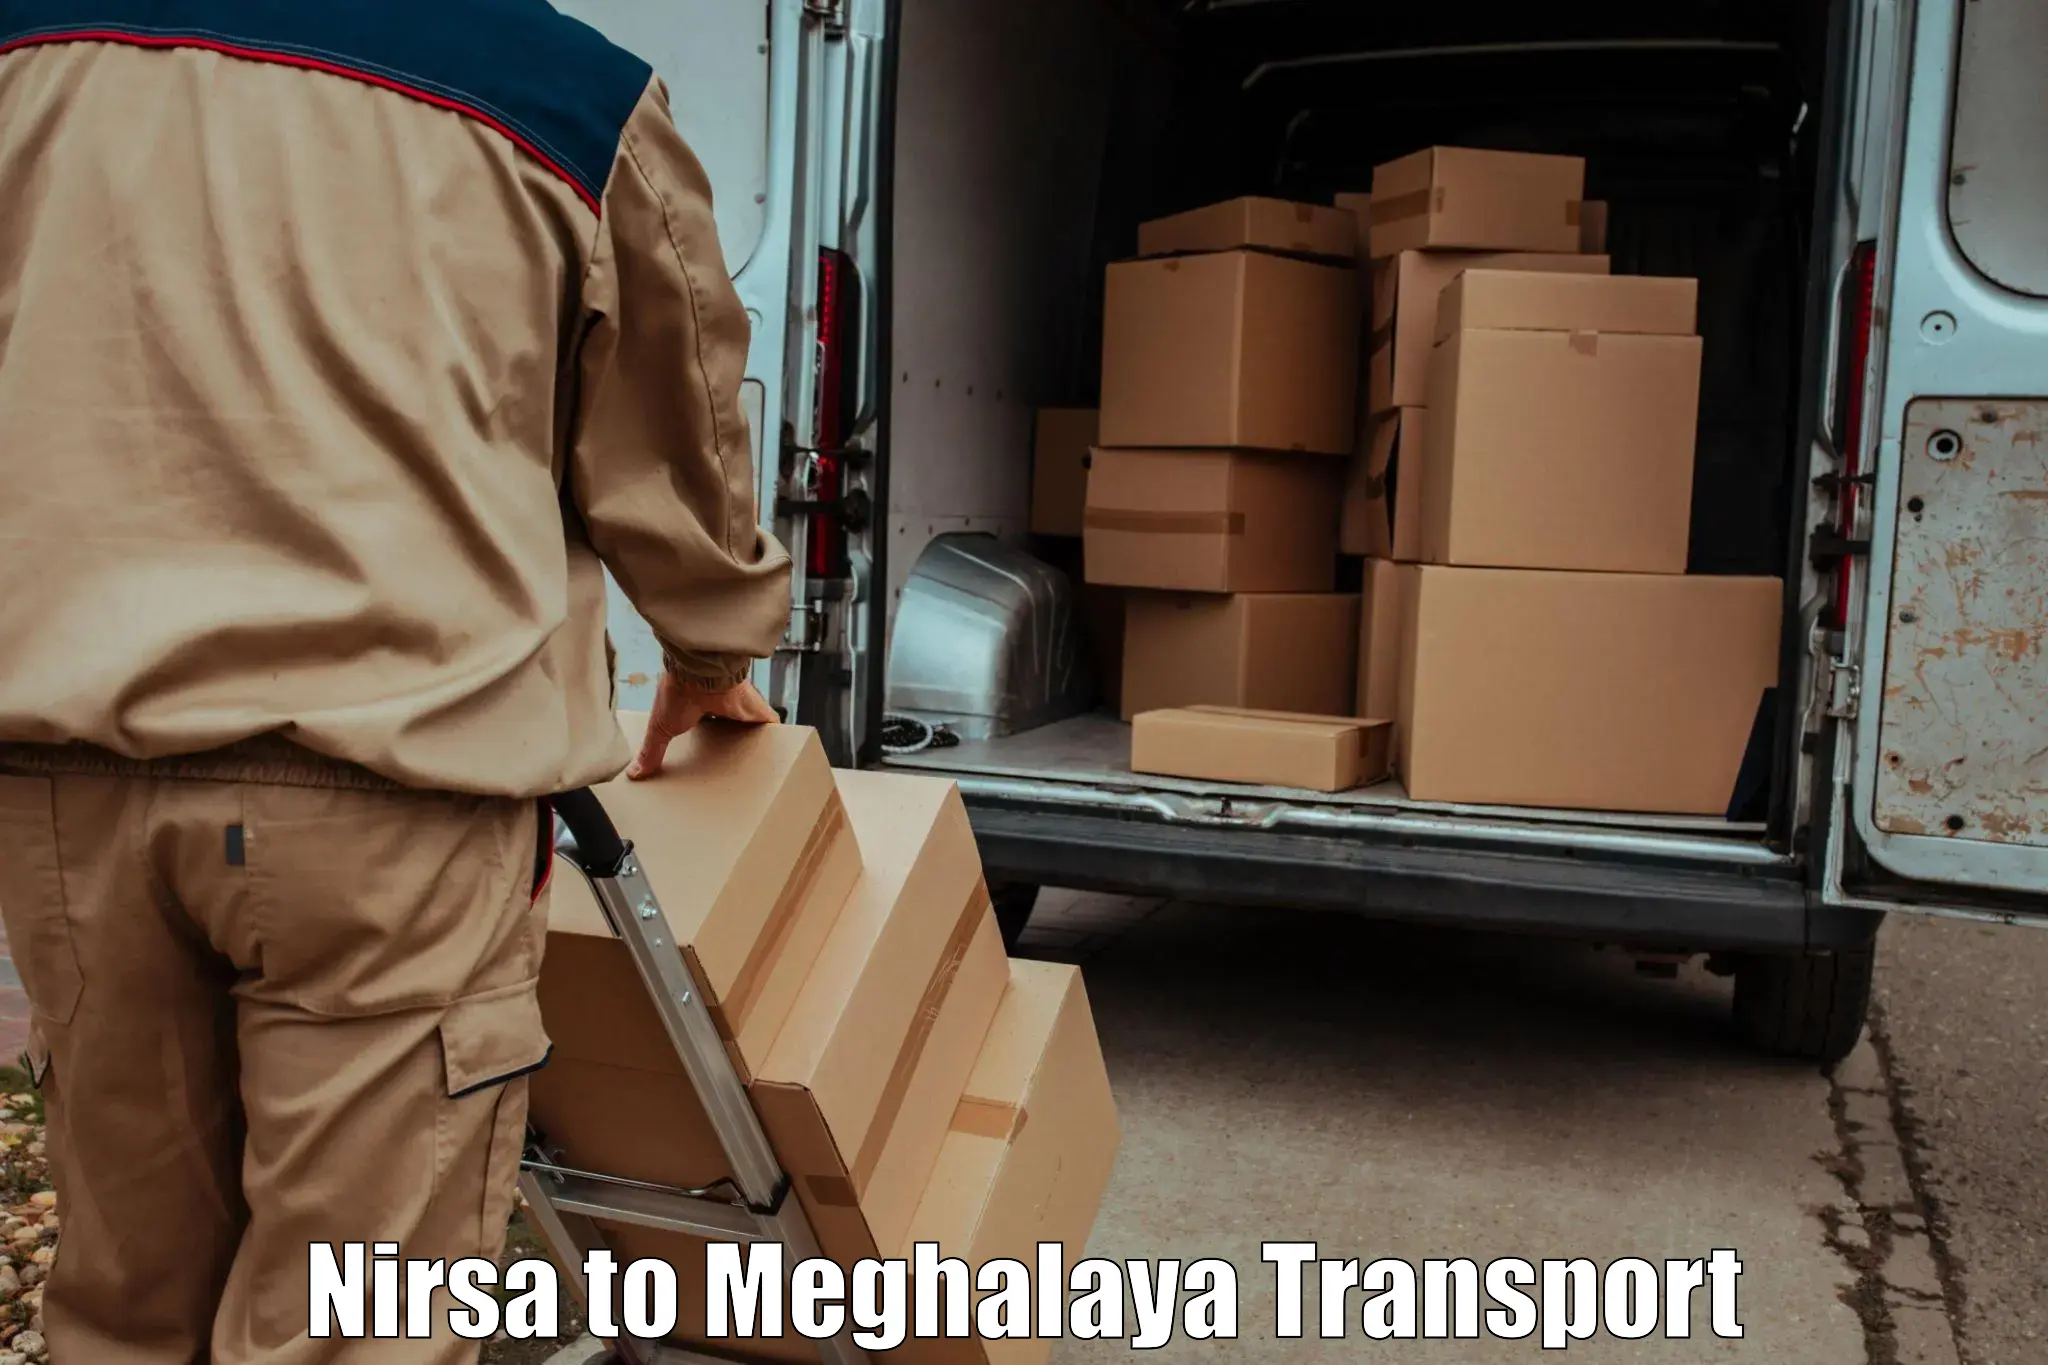 Online transport service Nirsa to Meghalaya